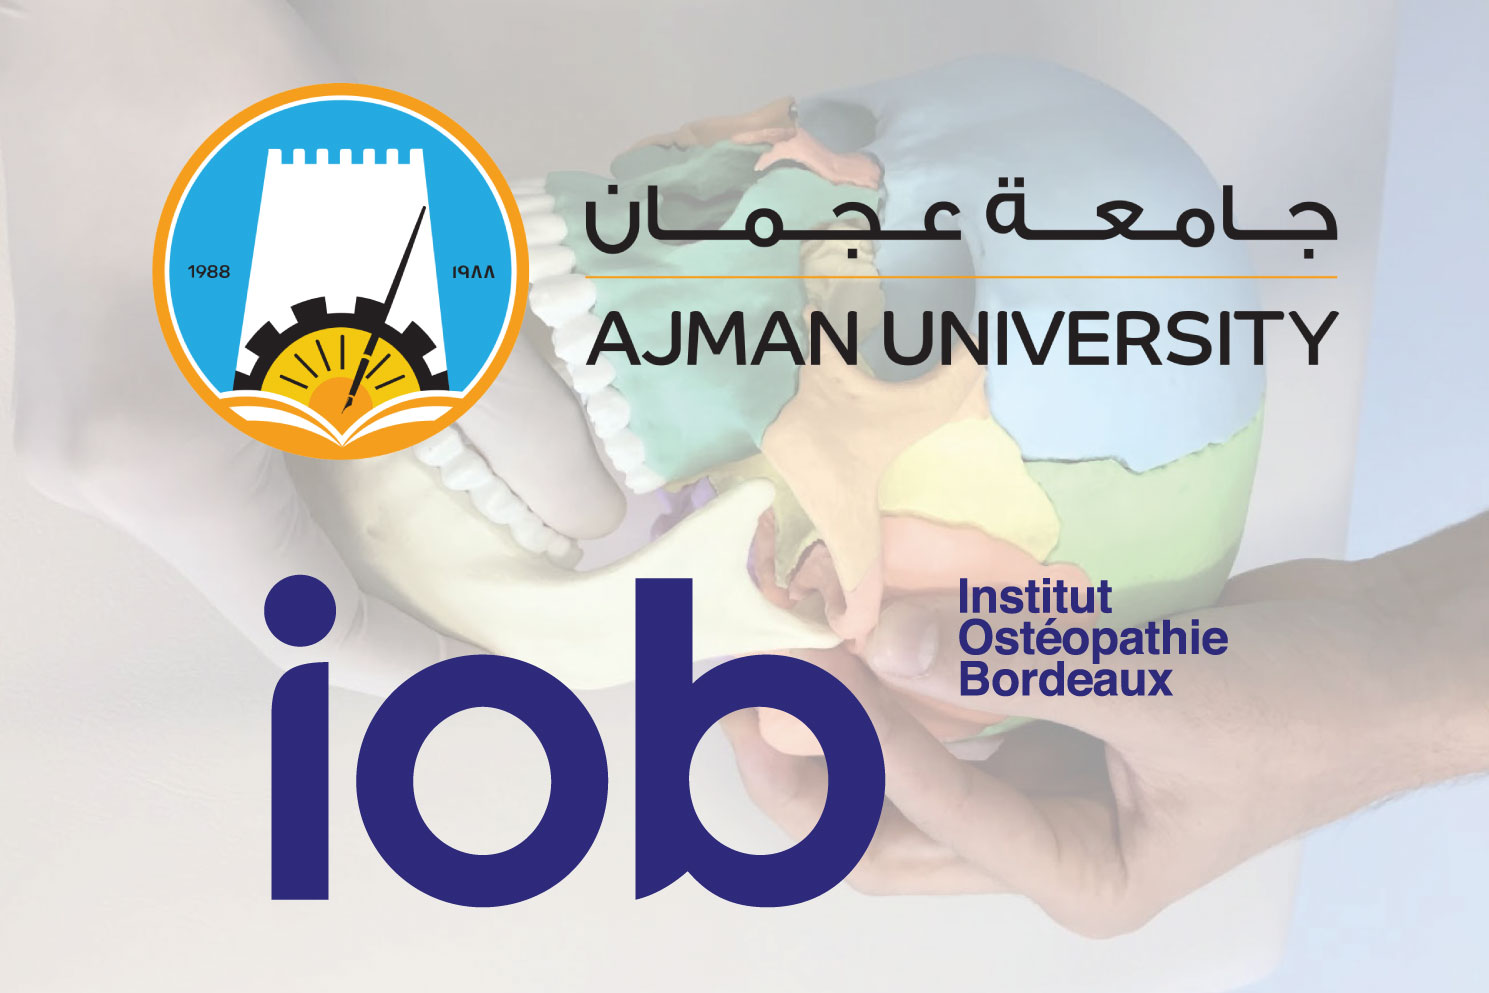 IOB-ecole-osteopathie-bordeaux-partenariat-ajman-university-dubai